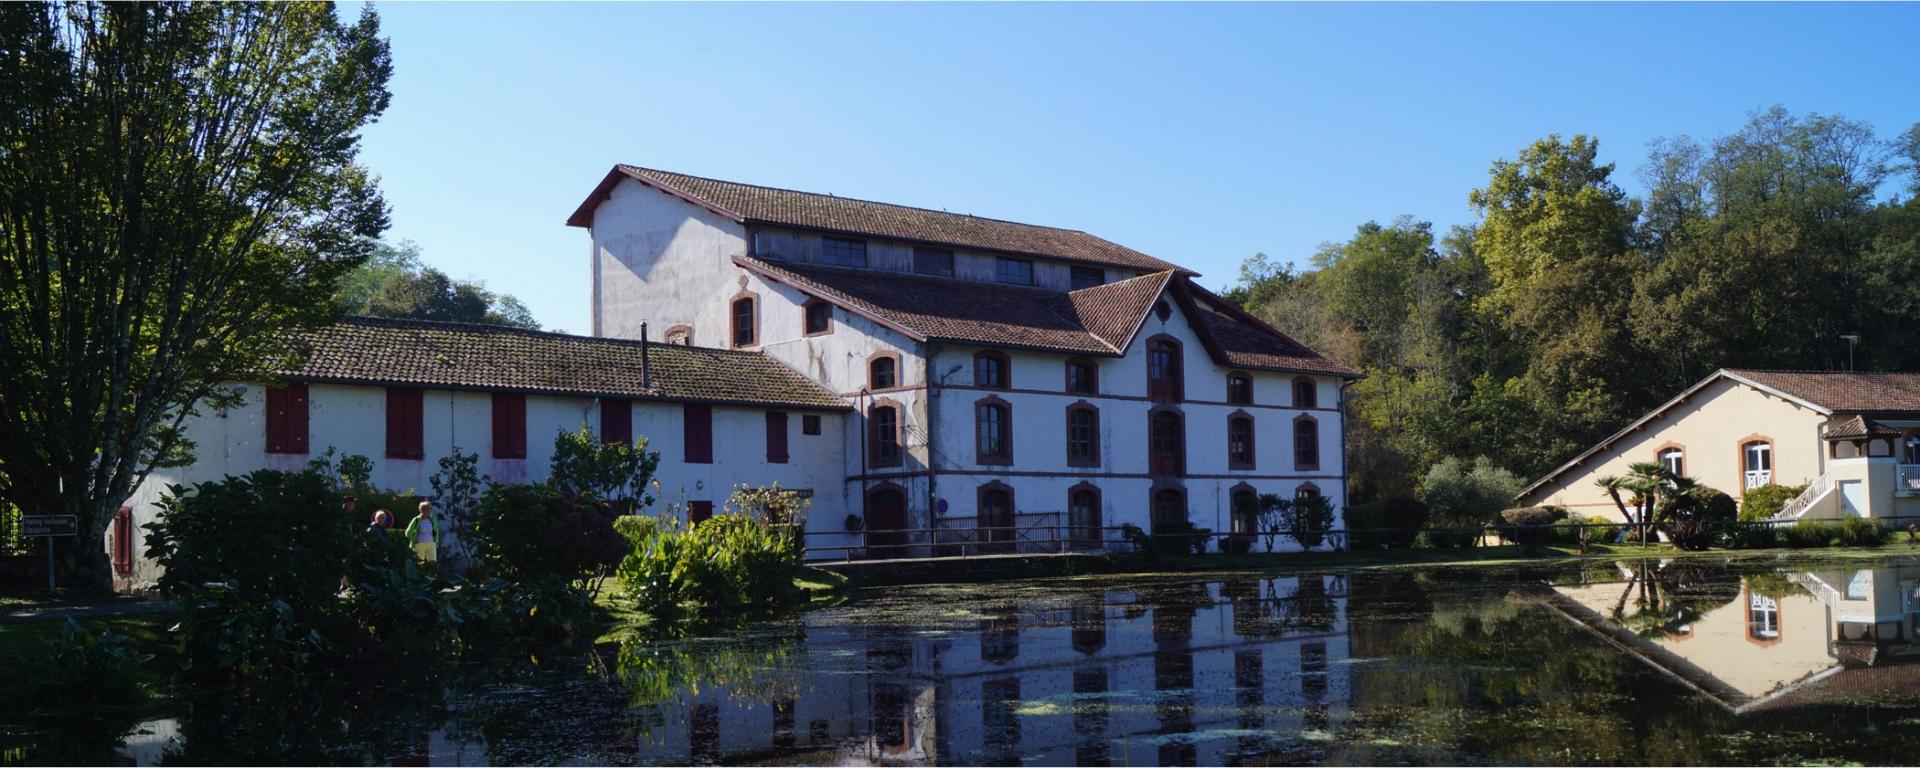 La Maison des Arts dans le Moulin de Poustagnacq à Saint-Paul-lès-Dax [40]